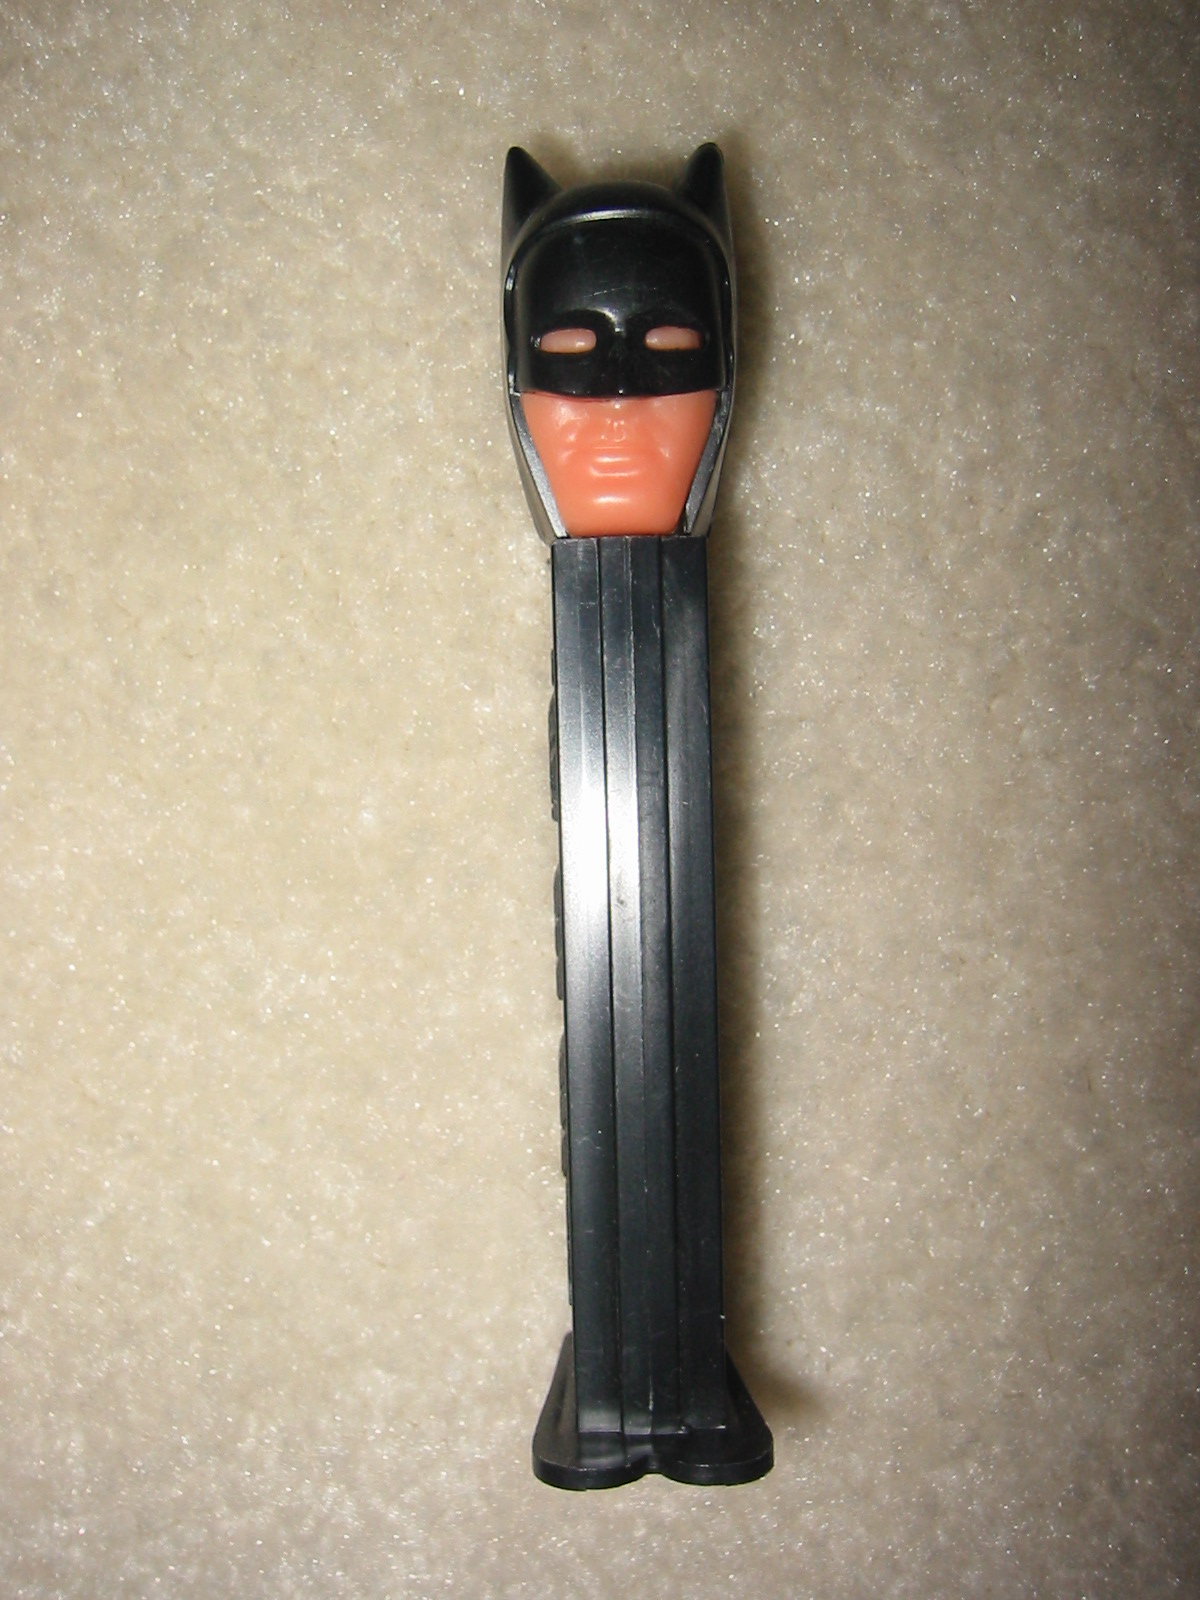 Batman Pez Dispenser